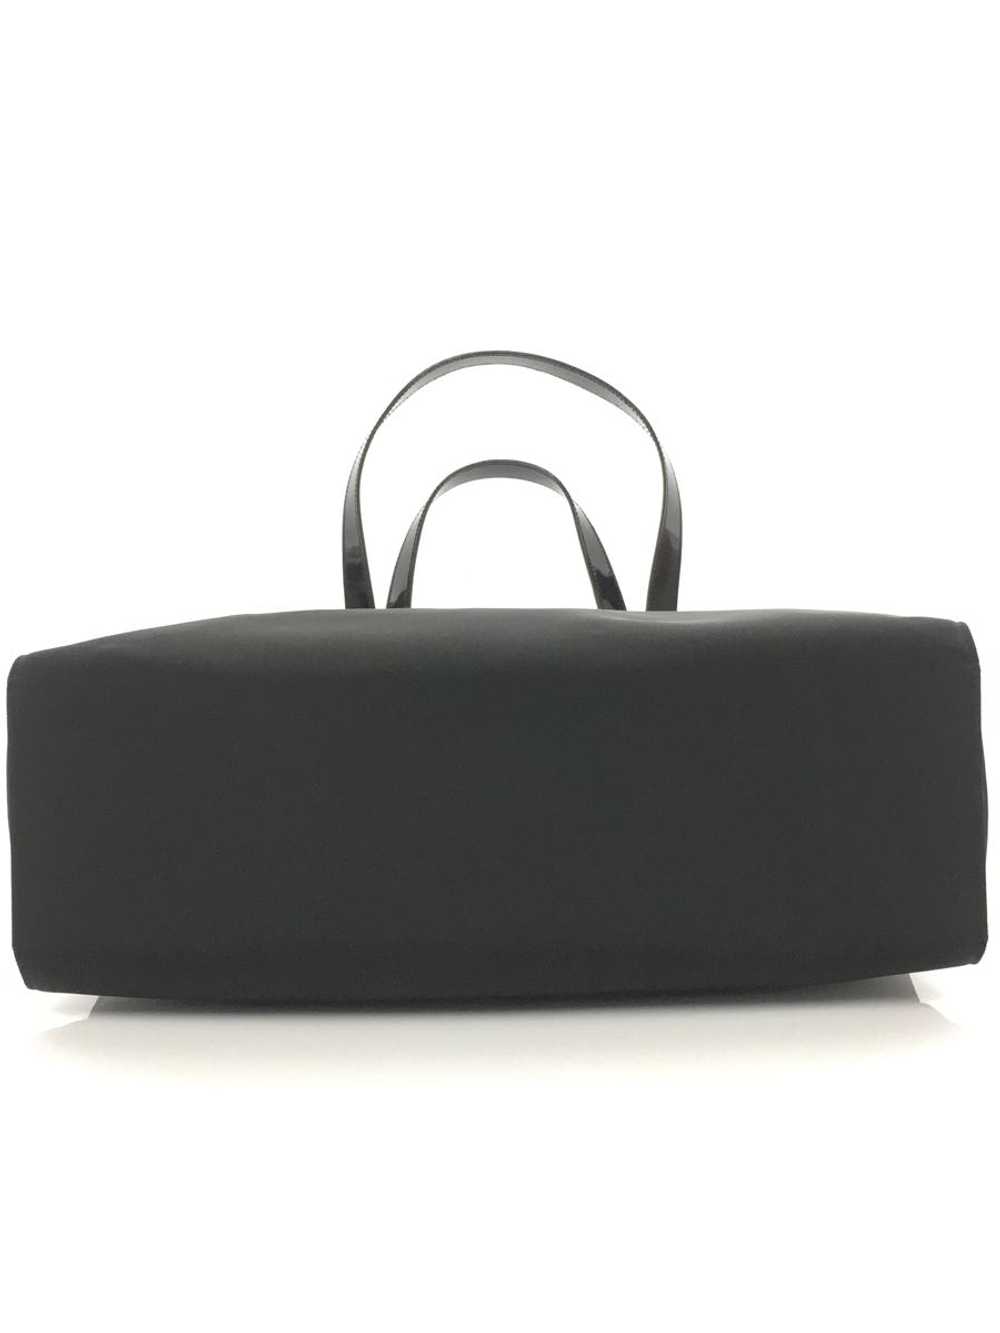 [Japan Used Bag] Used Gucci Tote Bag/Nylon/Blk Bag - image 4